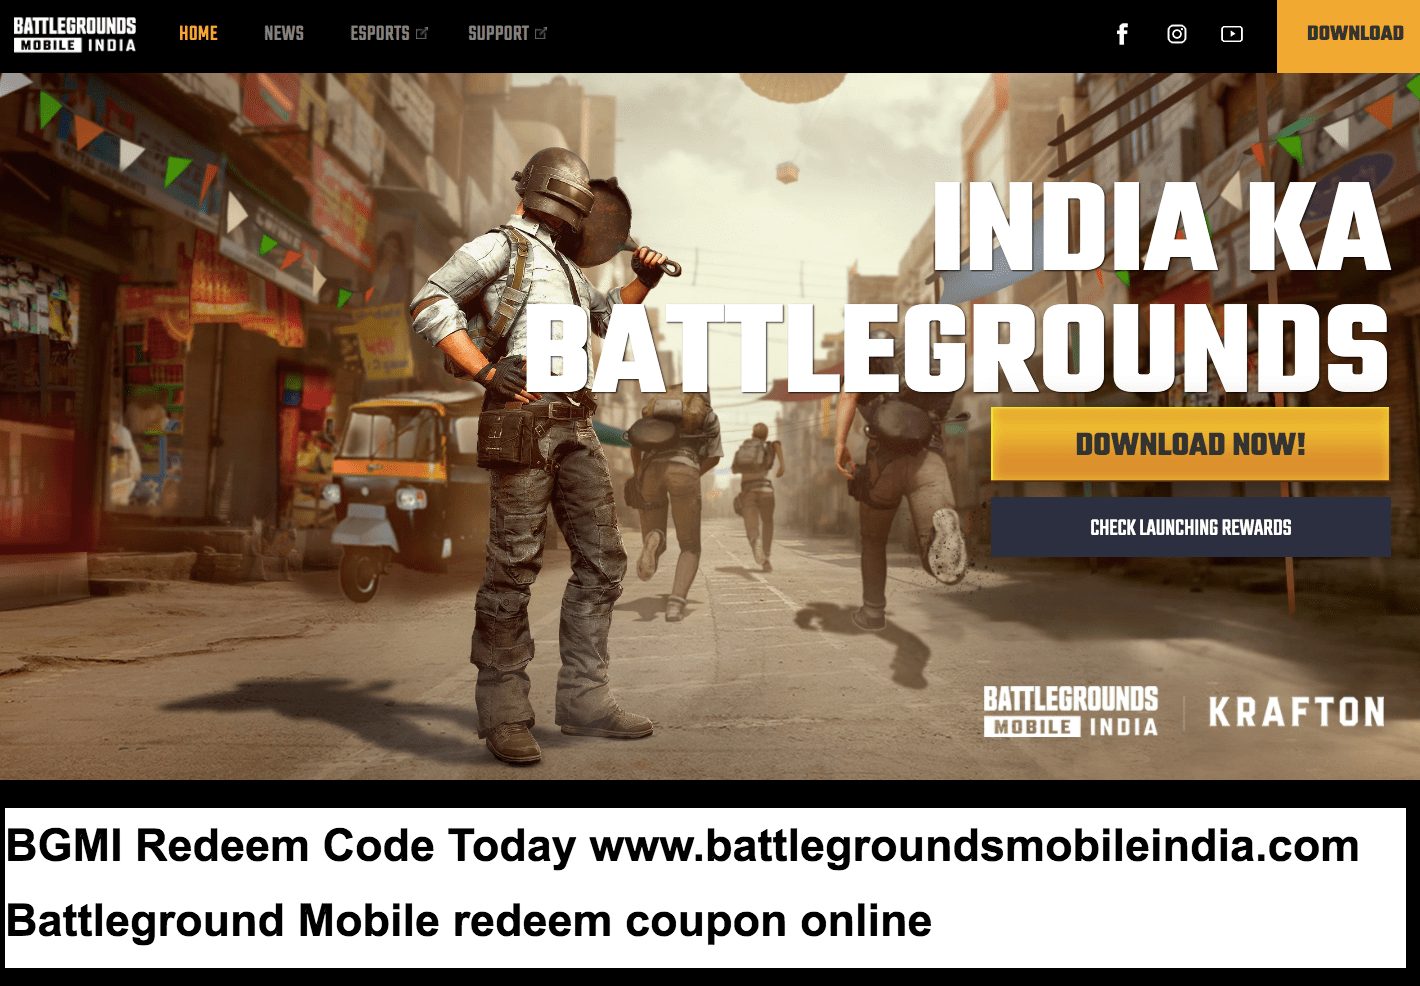 BGMI Redeem Code Today 10 July 2021 www.battlegroundsmobileindia.com Battleground Mobile redeem coupon online